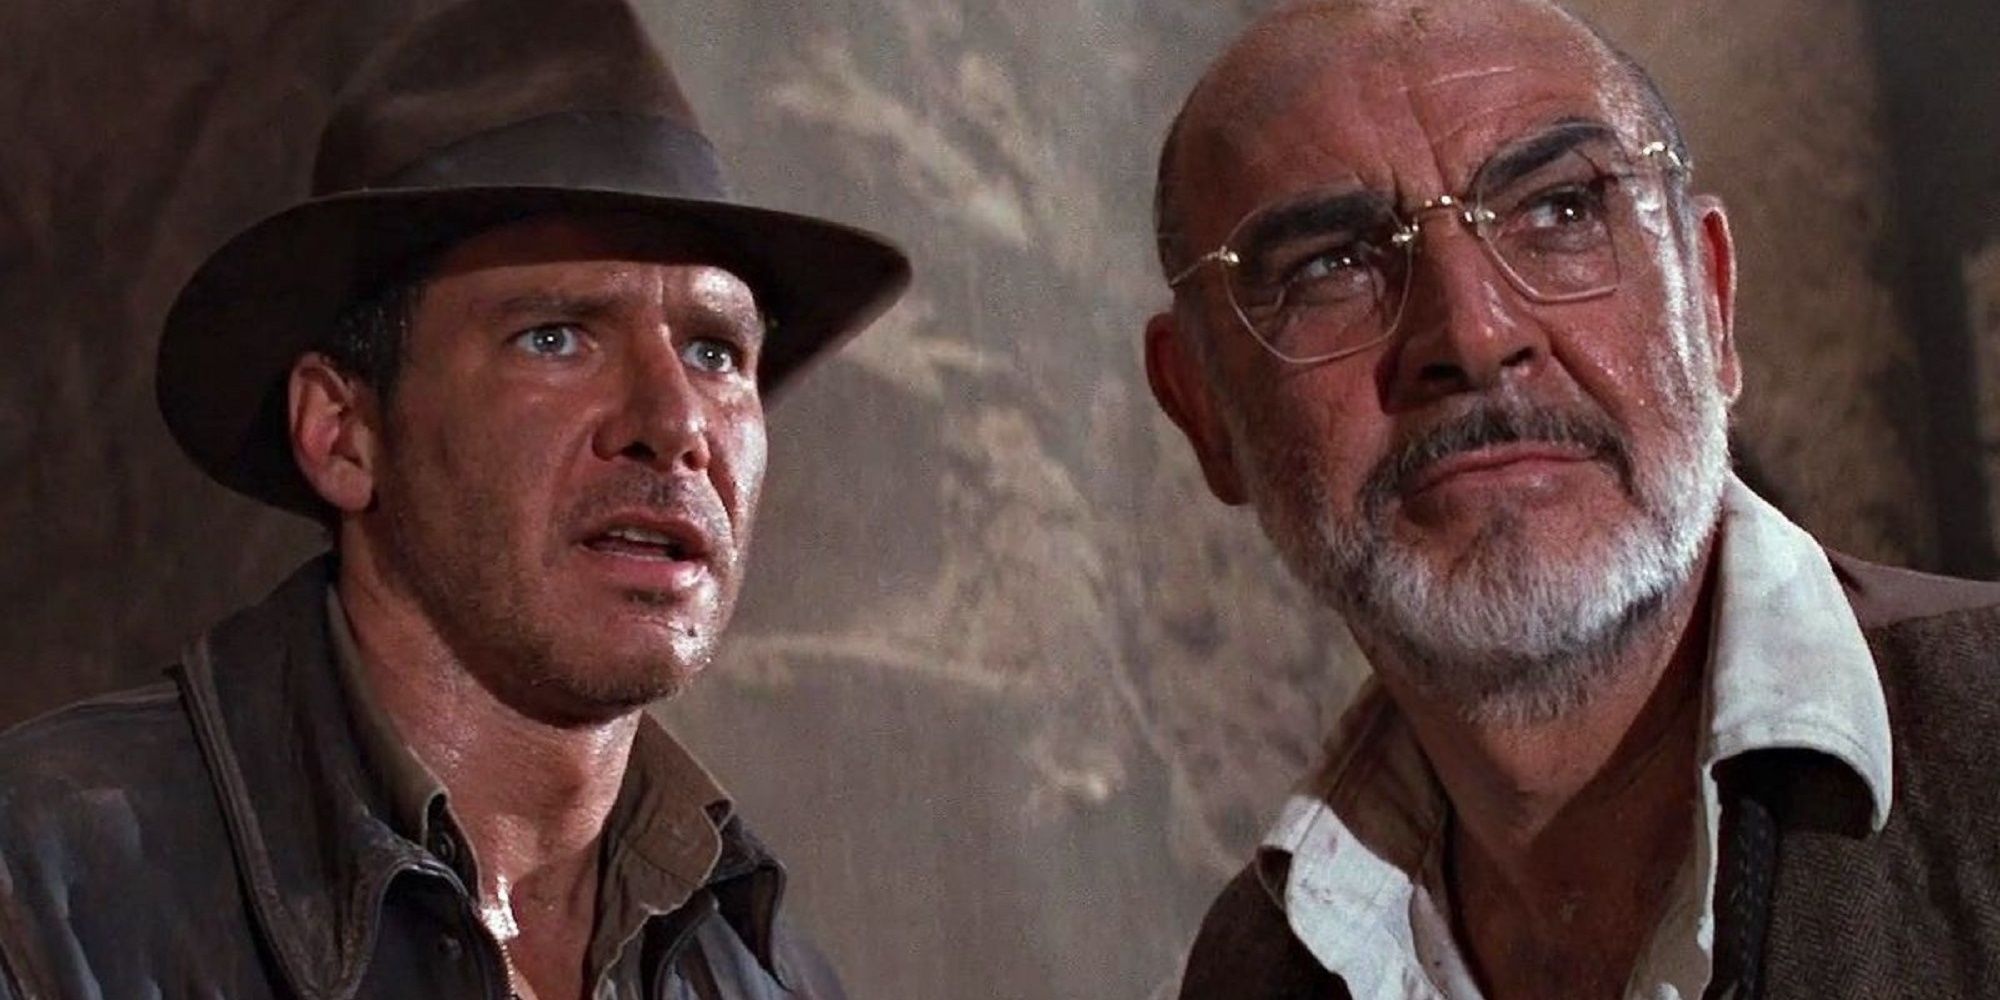 Indiana Jones and Henry Jones Sr. in Indiana Jones: The Last Crusade.